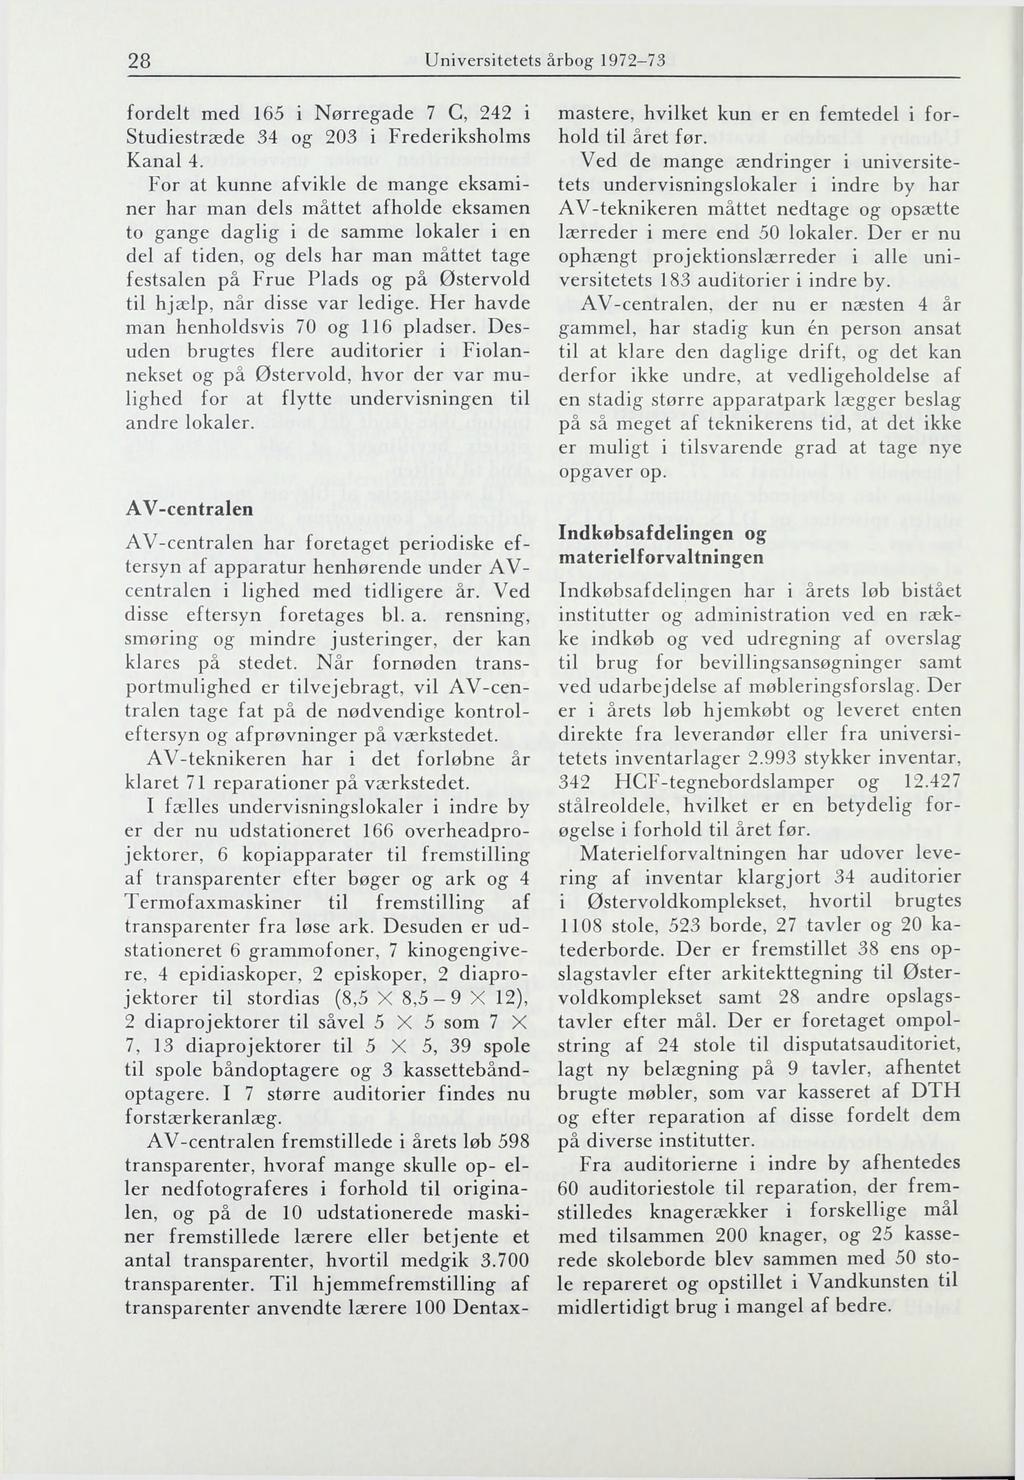 28 Universitetets årbog 1972-73 fordelt med 165 i Nørregade 7 C, 242 i Studiestræde 34 og 203 i Frederiksholms Kanal 4.